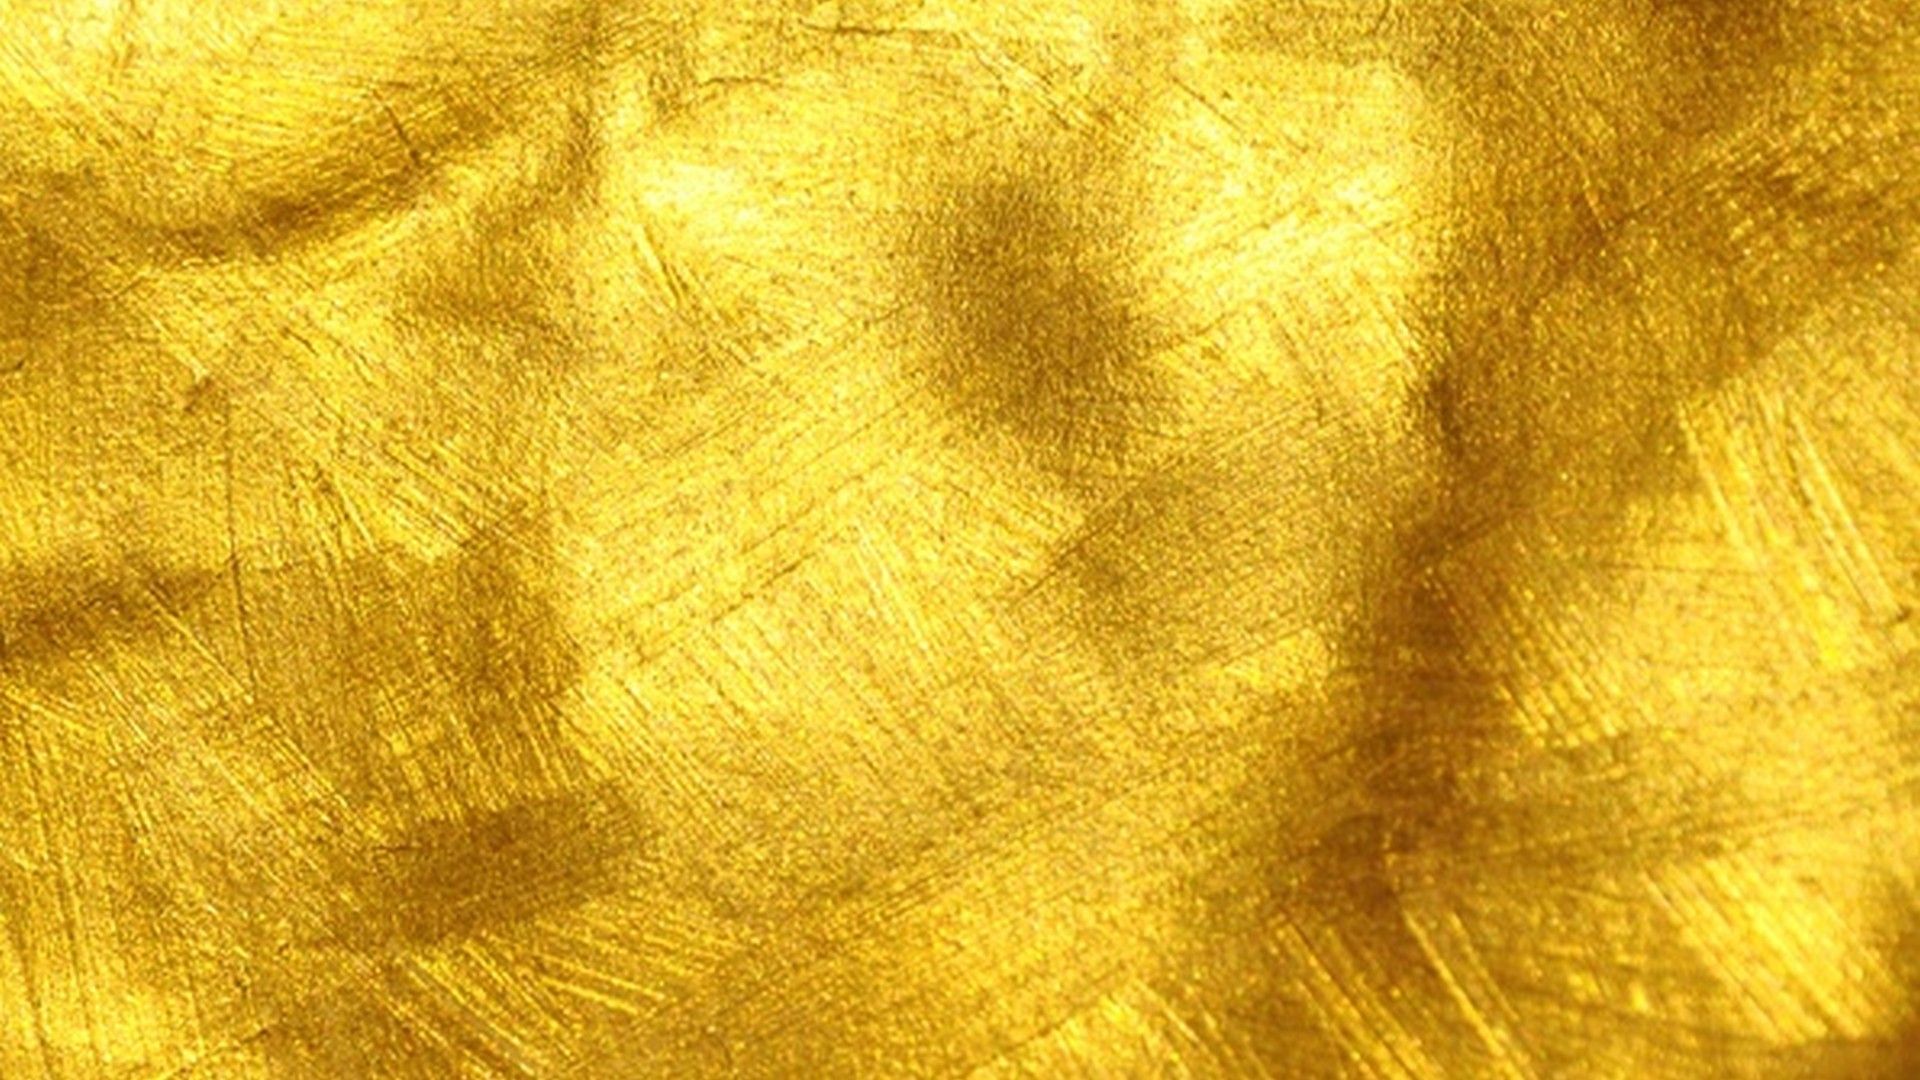 Textured metallic gold background.